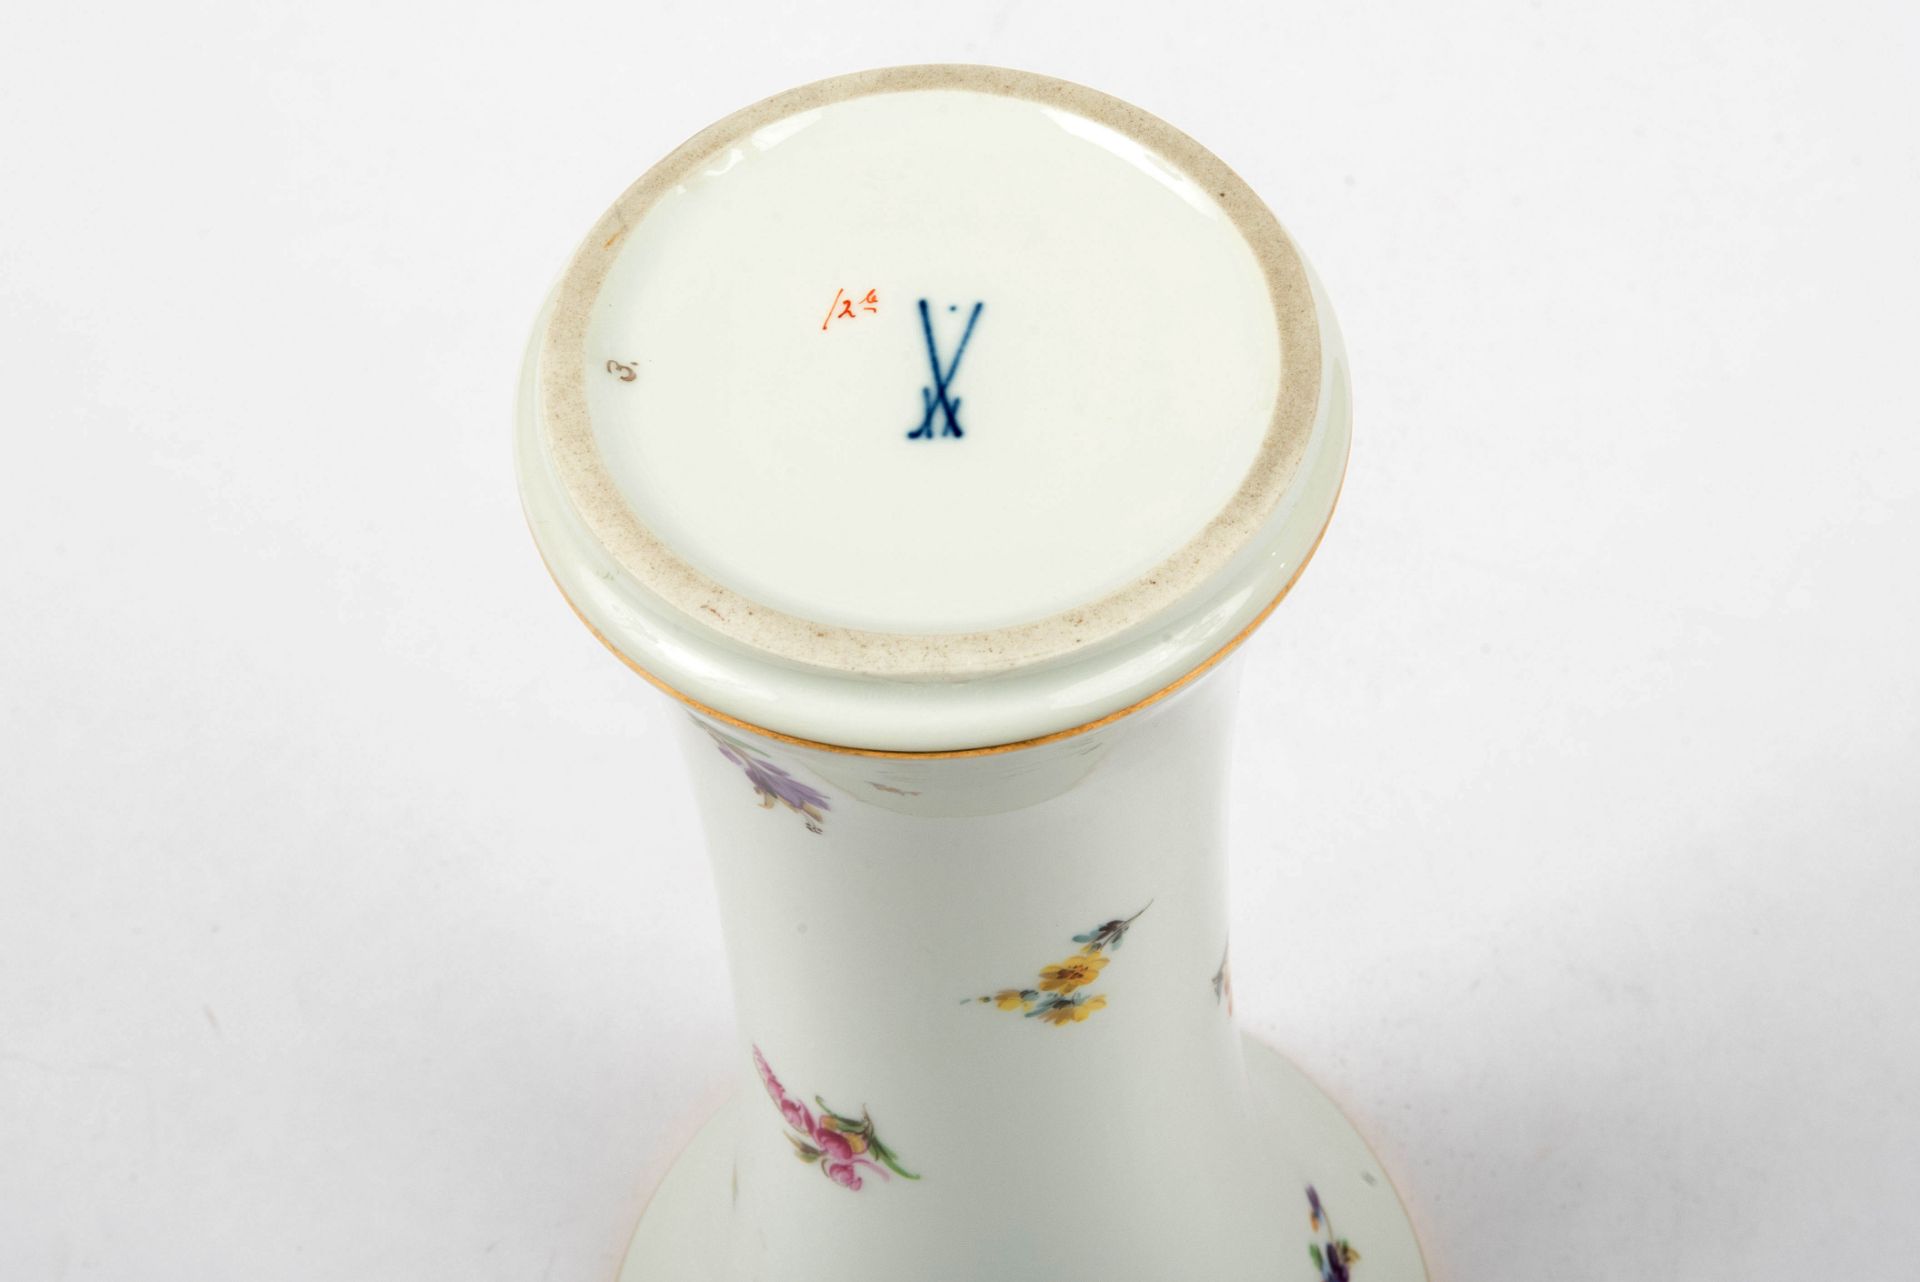 Hohe Vase mit Streublumen, Meissen, 1924-1934 - Image 3 of 3